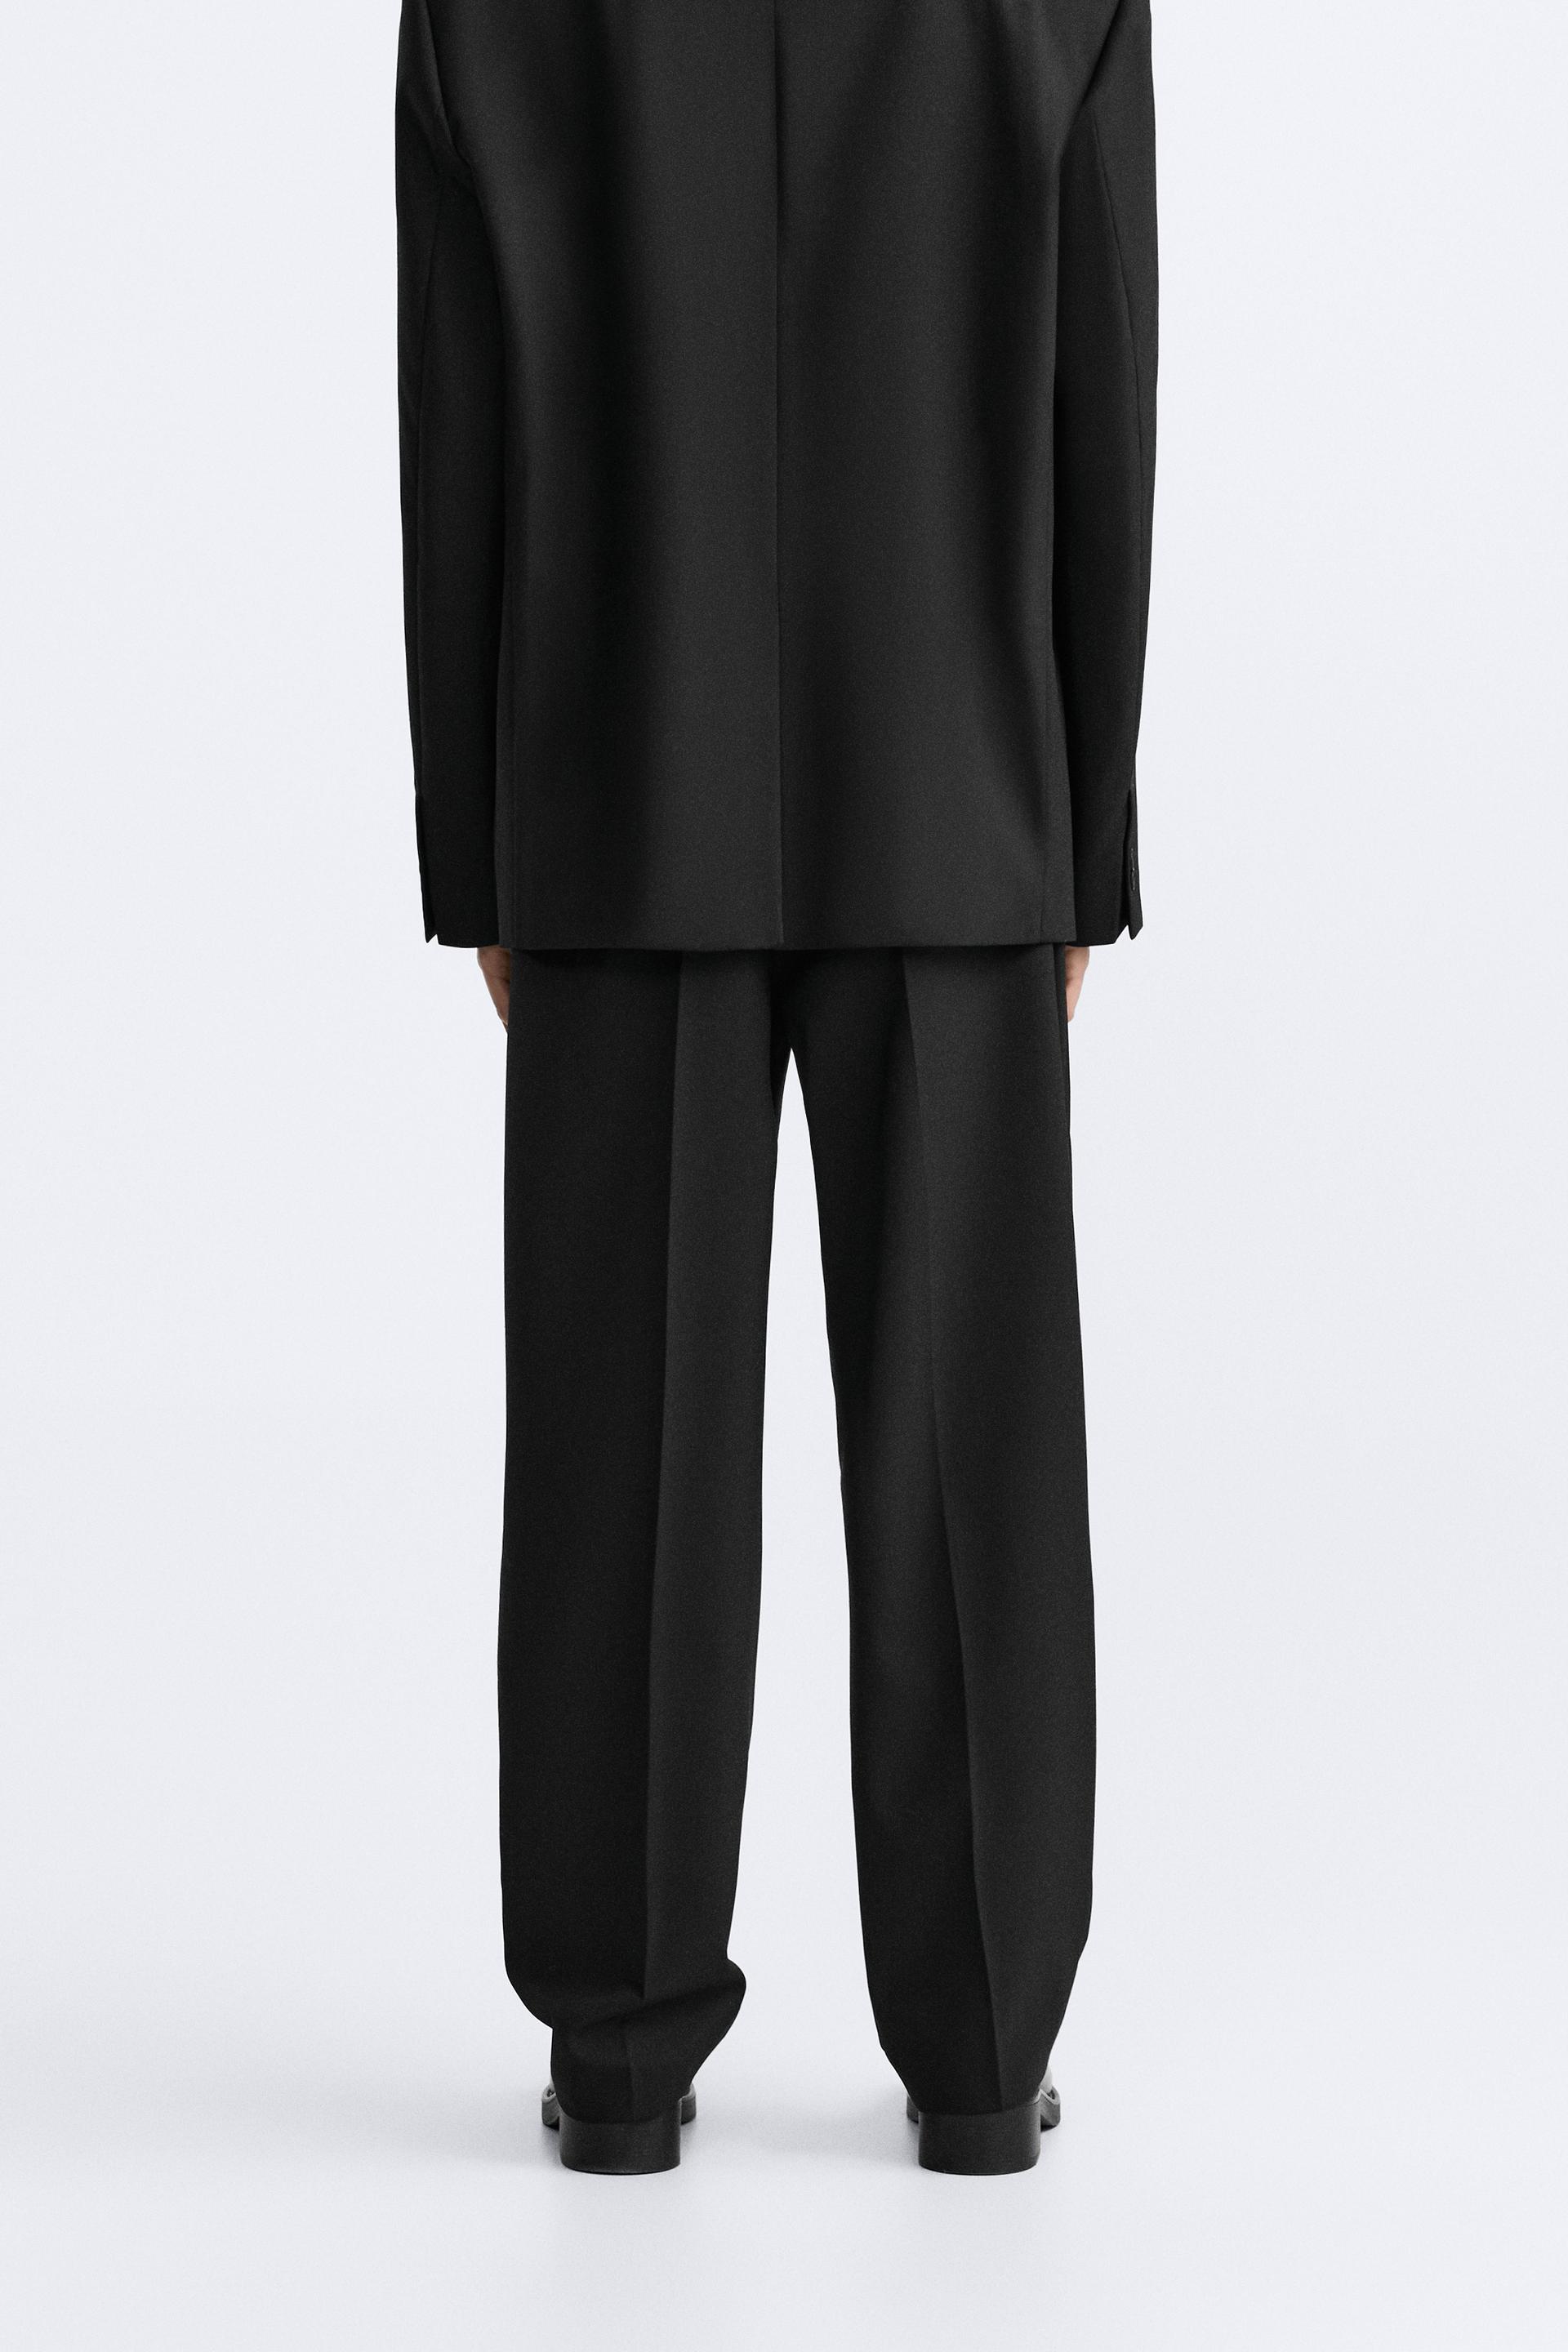 Black wool blend Pant Suit